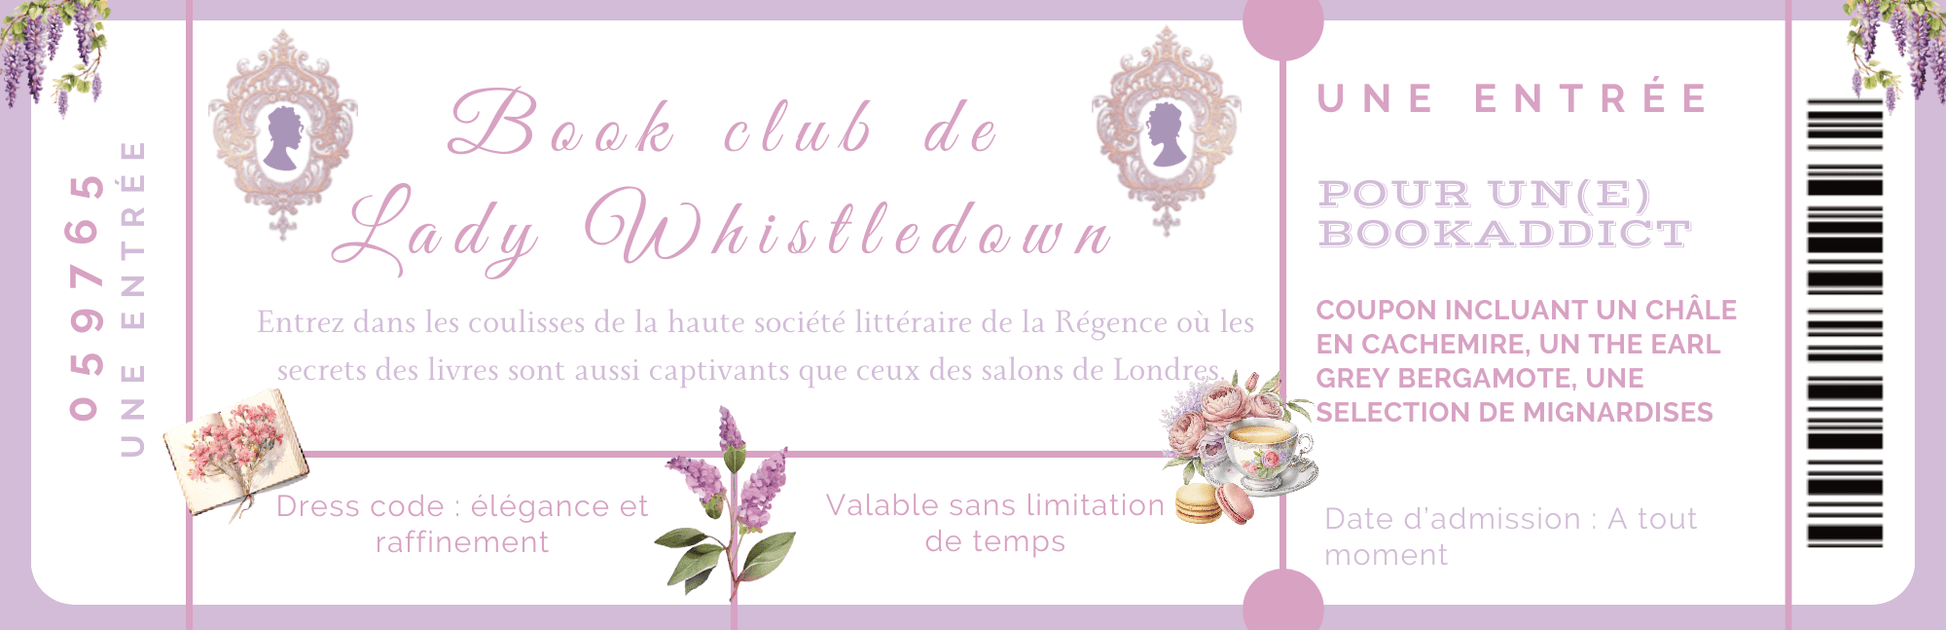 Marque page Ticket d'entrée Book Club de Lady Whistledown - La Papet' Littéraire